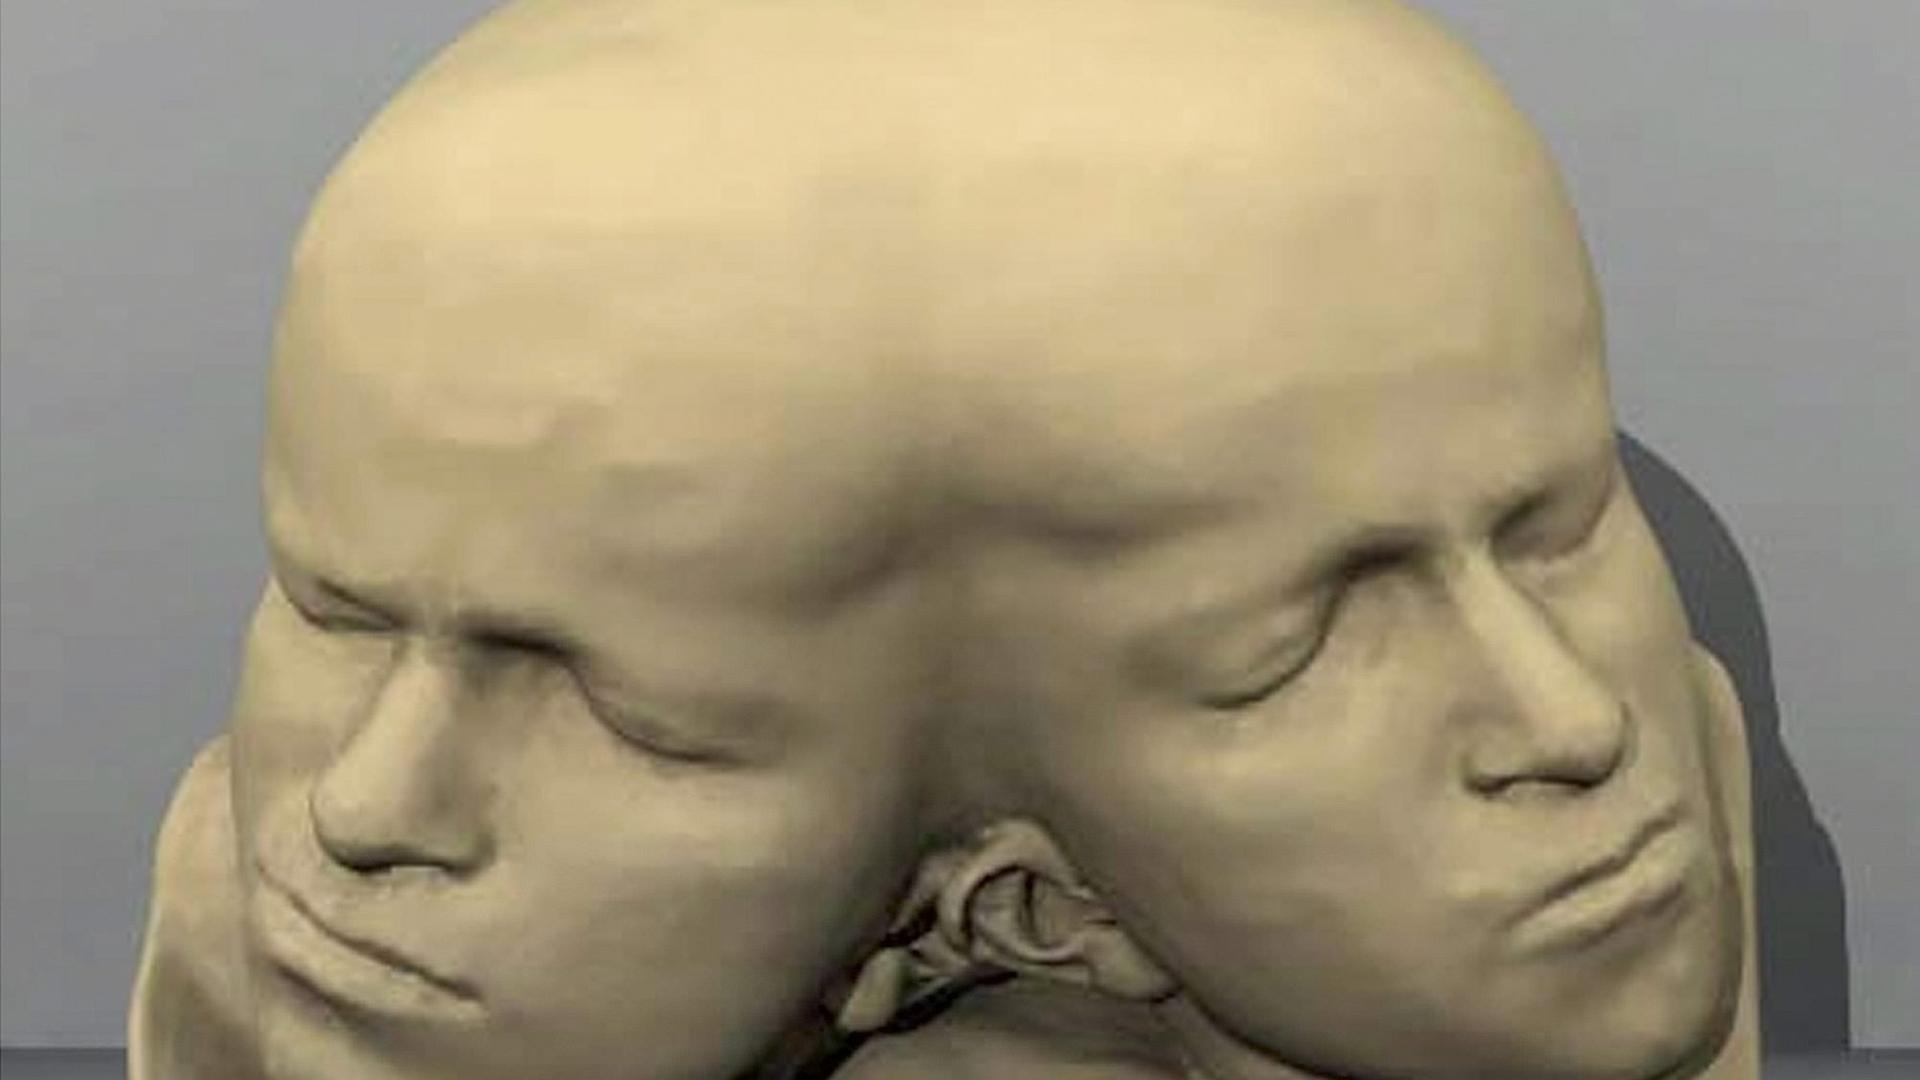 Plastik zweier zusammengewachsener Schädel mit unterschiedlichen Profilen.